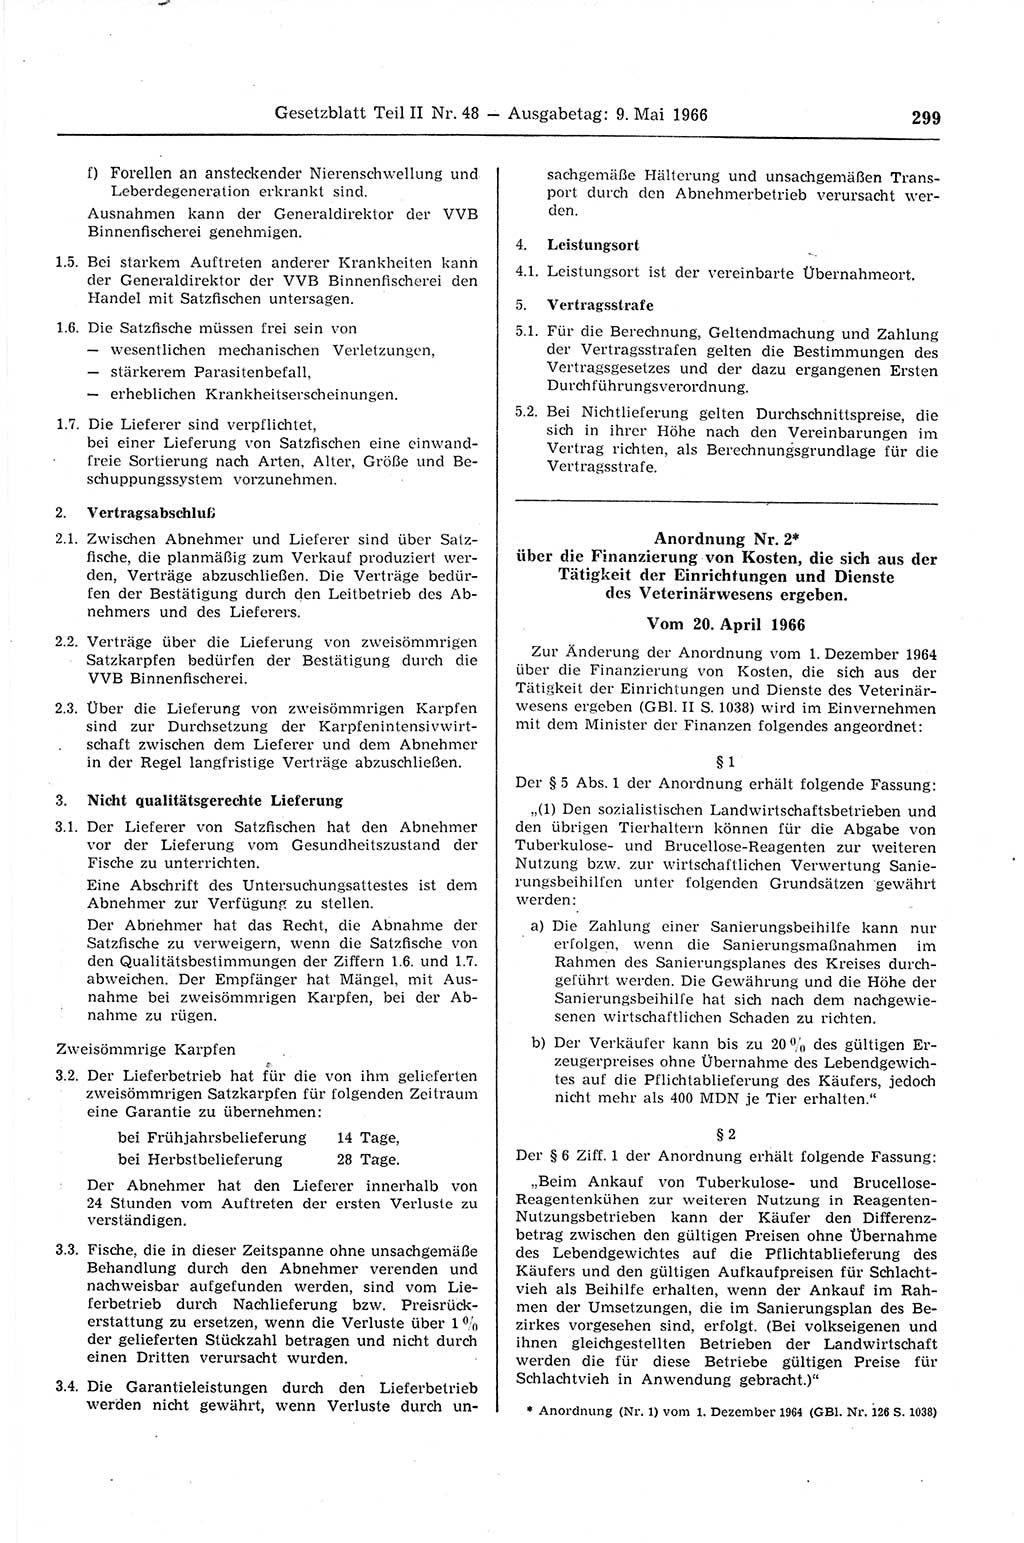 Gesetzblatt (GBl.) der Deutschen Demokratischen Republik (DDR) Teil ⅠⅠ 1966, Seite 299 (GBl. DDR ⅠⅠ 1966, S. 299)